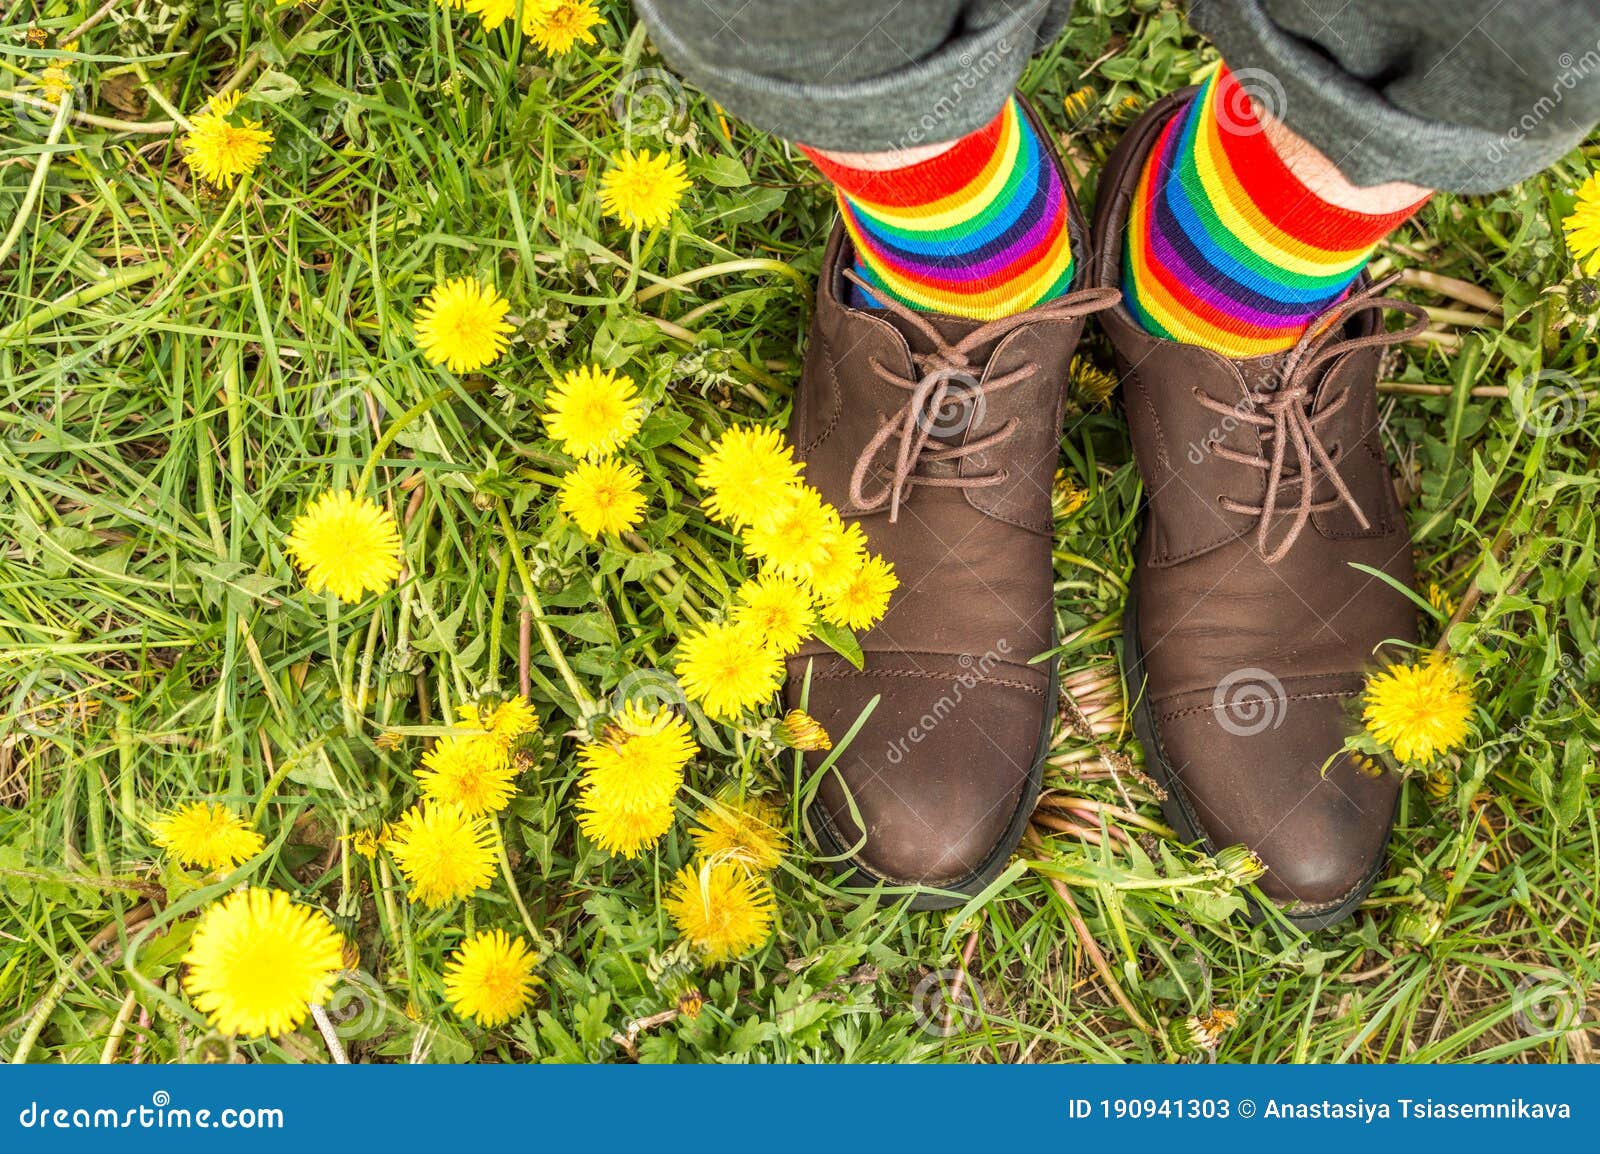 Hombre En Zapatos Y Medias De Colores Arcoiris Se Para En Hierba En Medio De Los Dientes Concepto Lgbt. Cerrar Imagen de archivo - Imagen de indicador, calcetines: 190941303